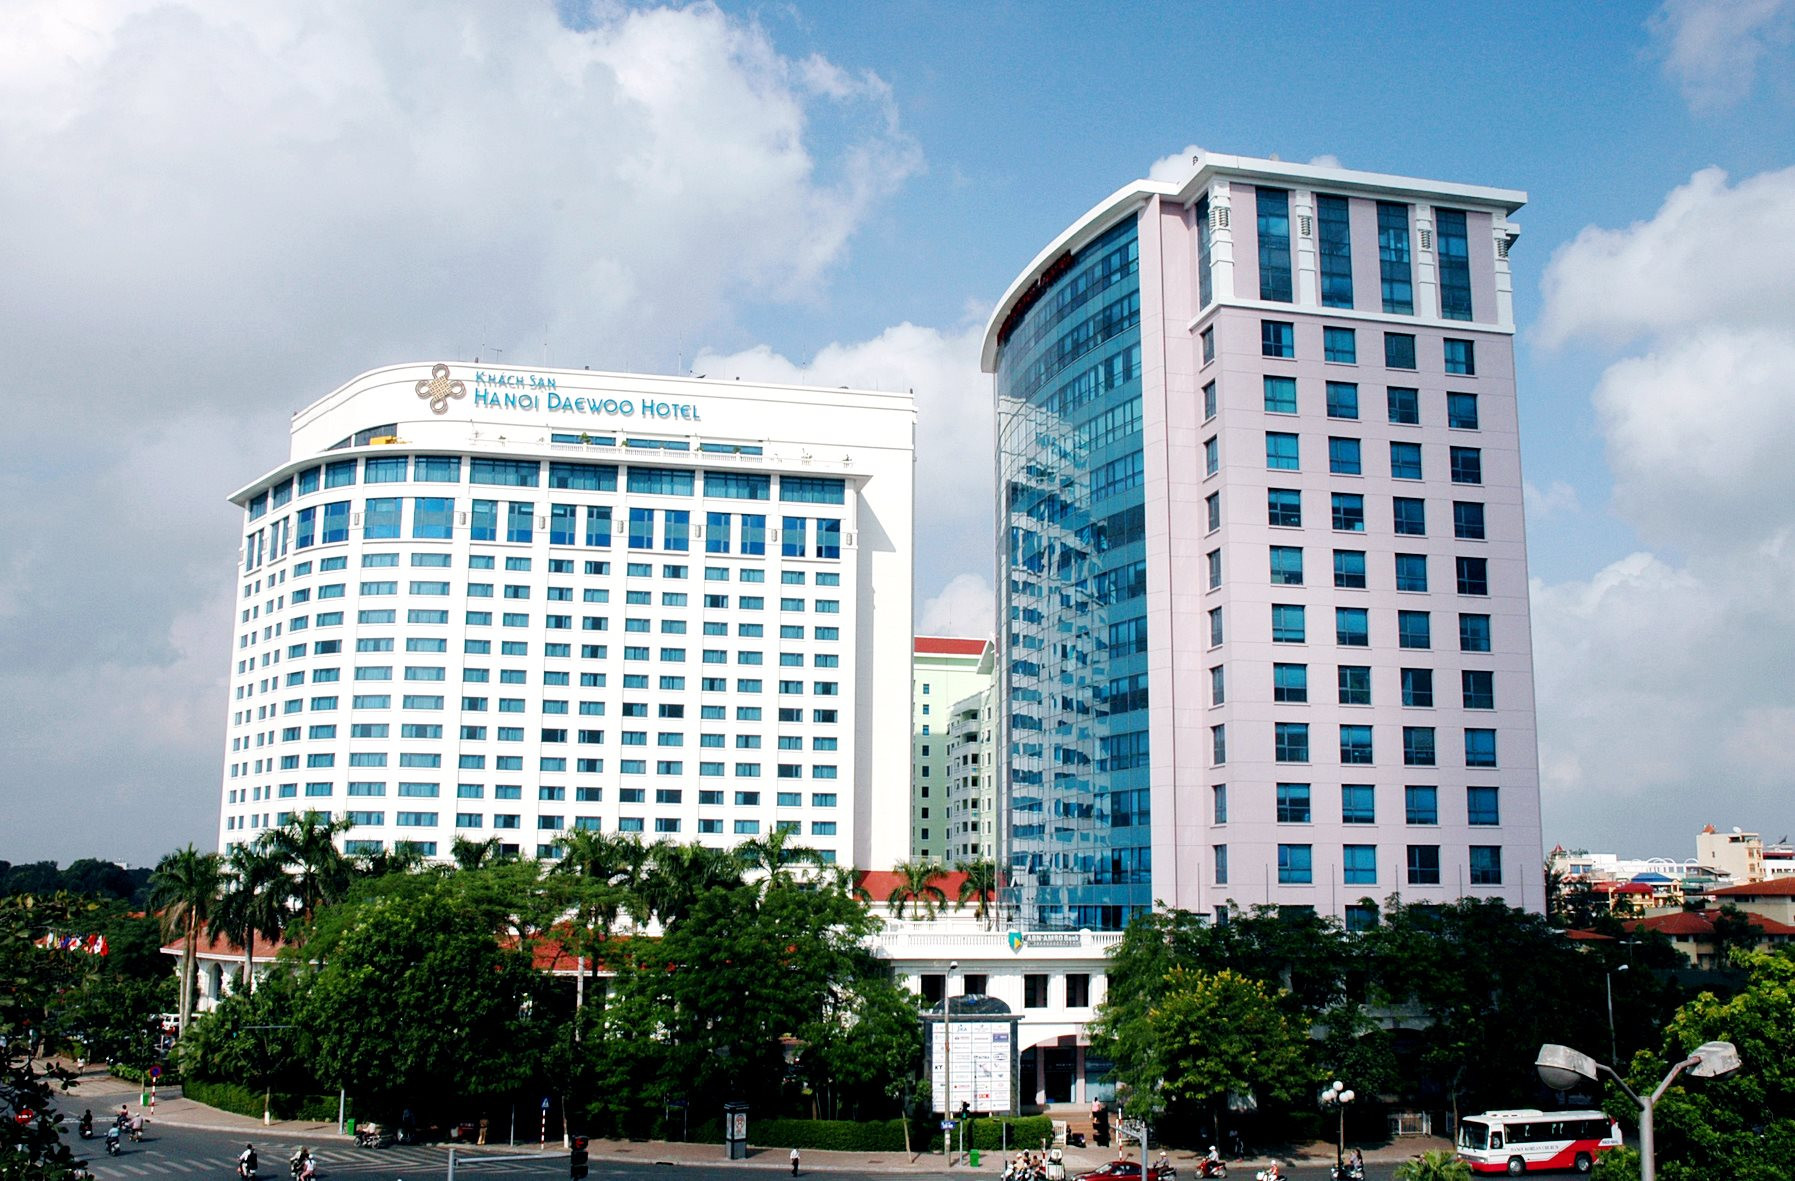 DN sở hữu Daewoo Hanoi và loạt khách sạn tại TP HCM sẽ bán tài sản để xử lý công nợ của lô trái phiếu 4.800 tỷ sau khi có kết luận điều tra về vụ Vạn Thịnh Phát - Ảnh 1.